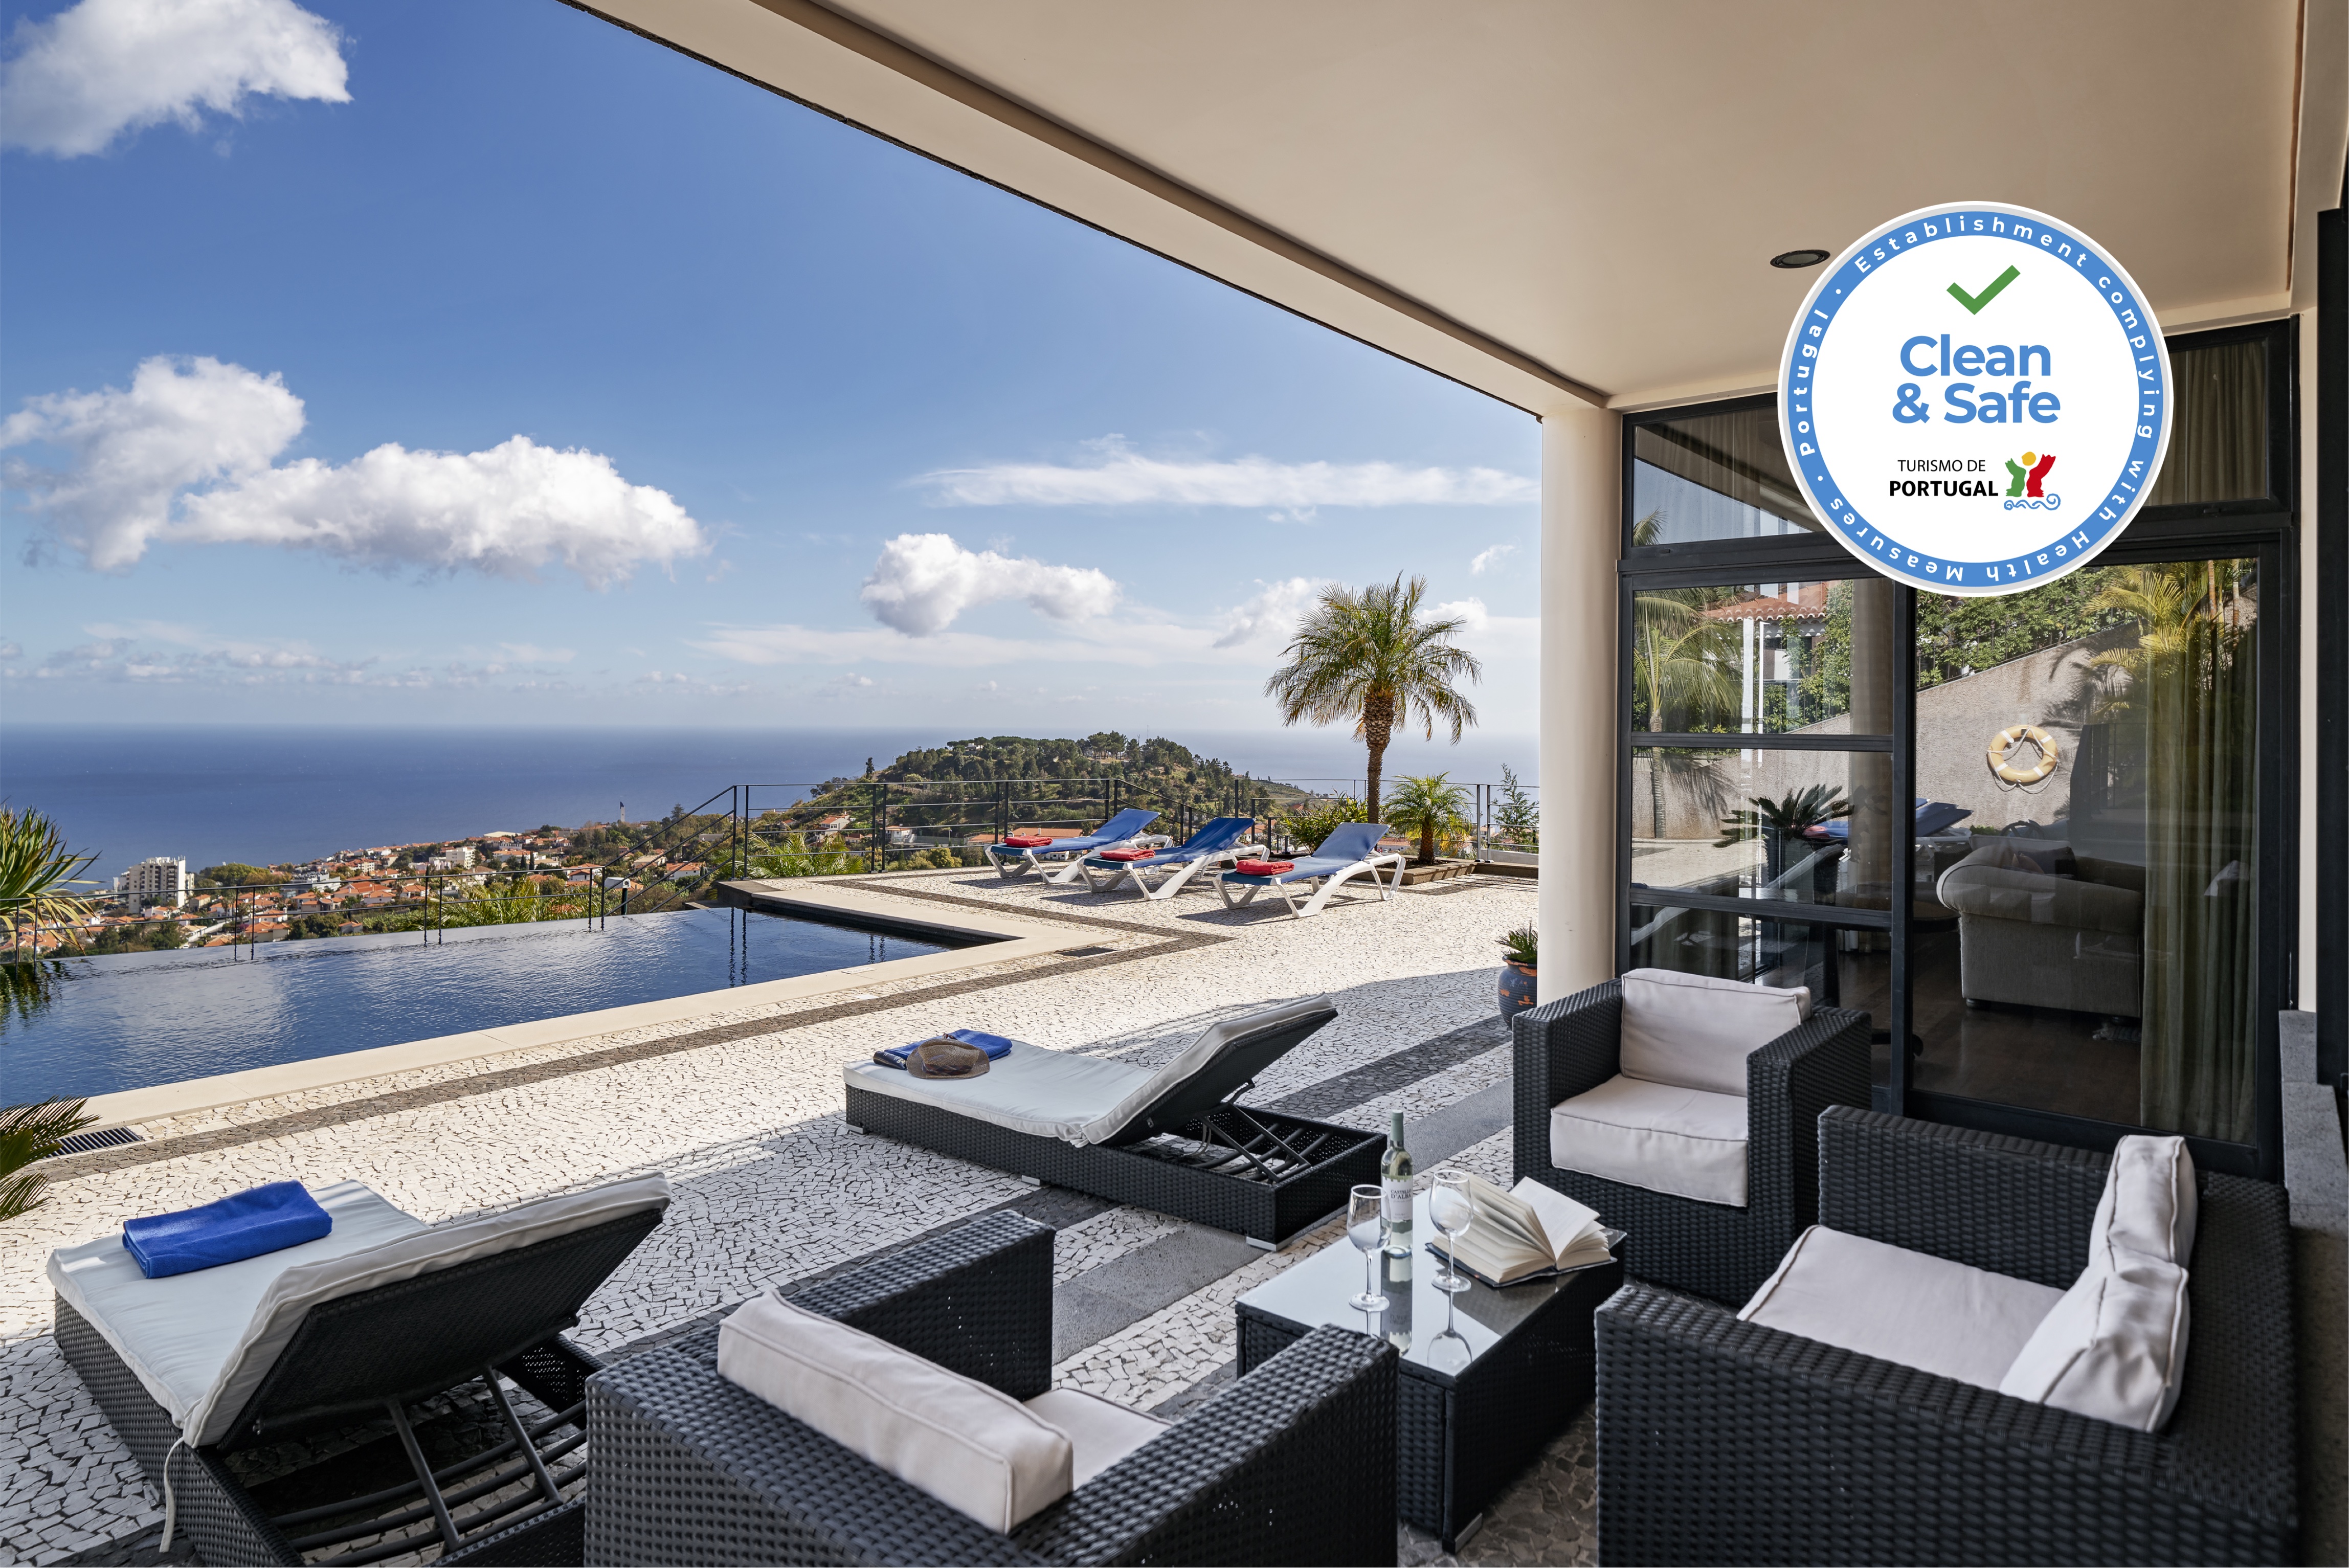 Fabulous villa, heated pool, games room, overlooking Funchal | Villa Luz 0